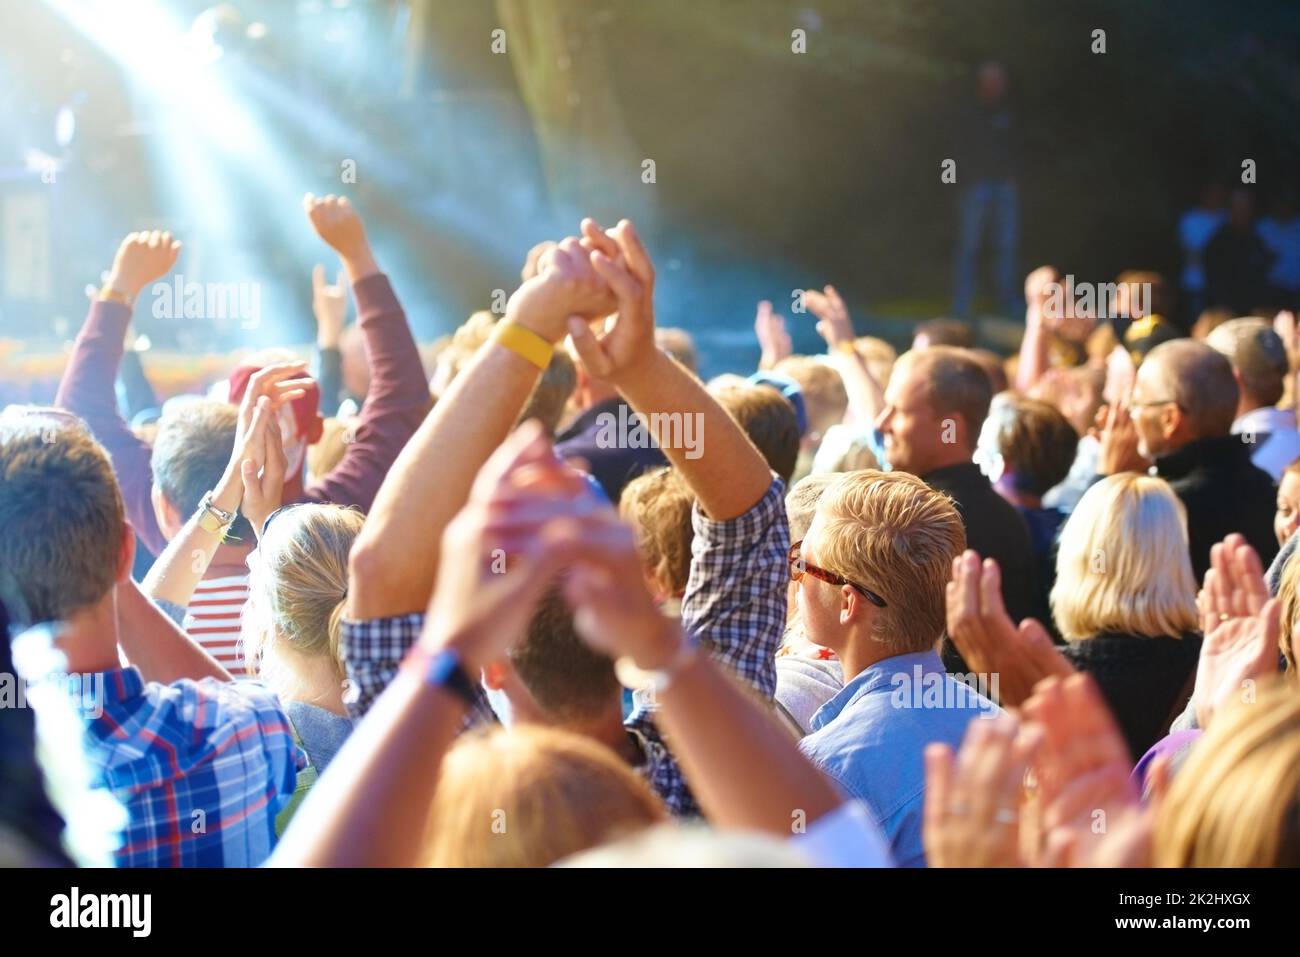 Profitez du festival de musique.Photo rognée d'une grande foule lors d'un concert de musique. Banque D'Images